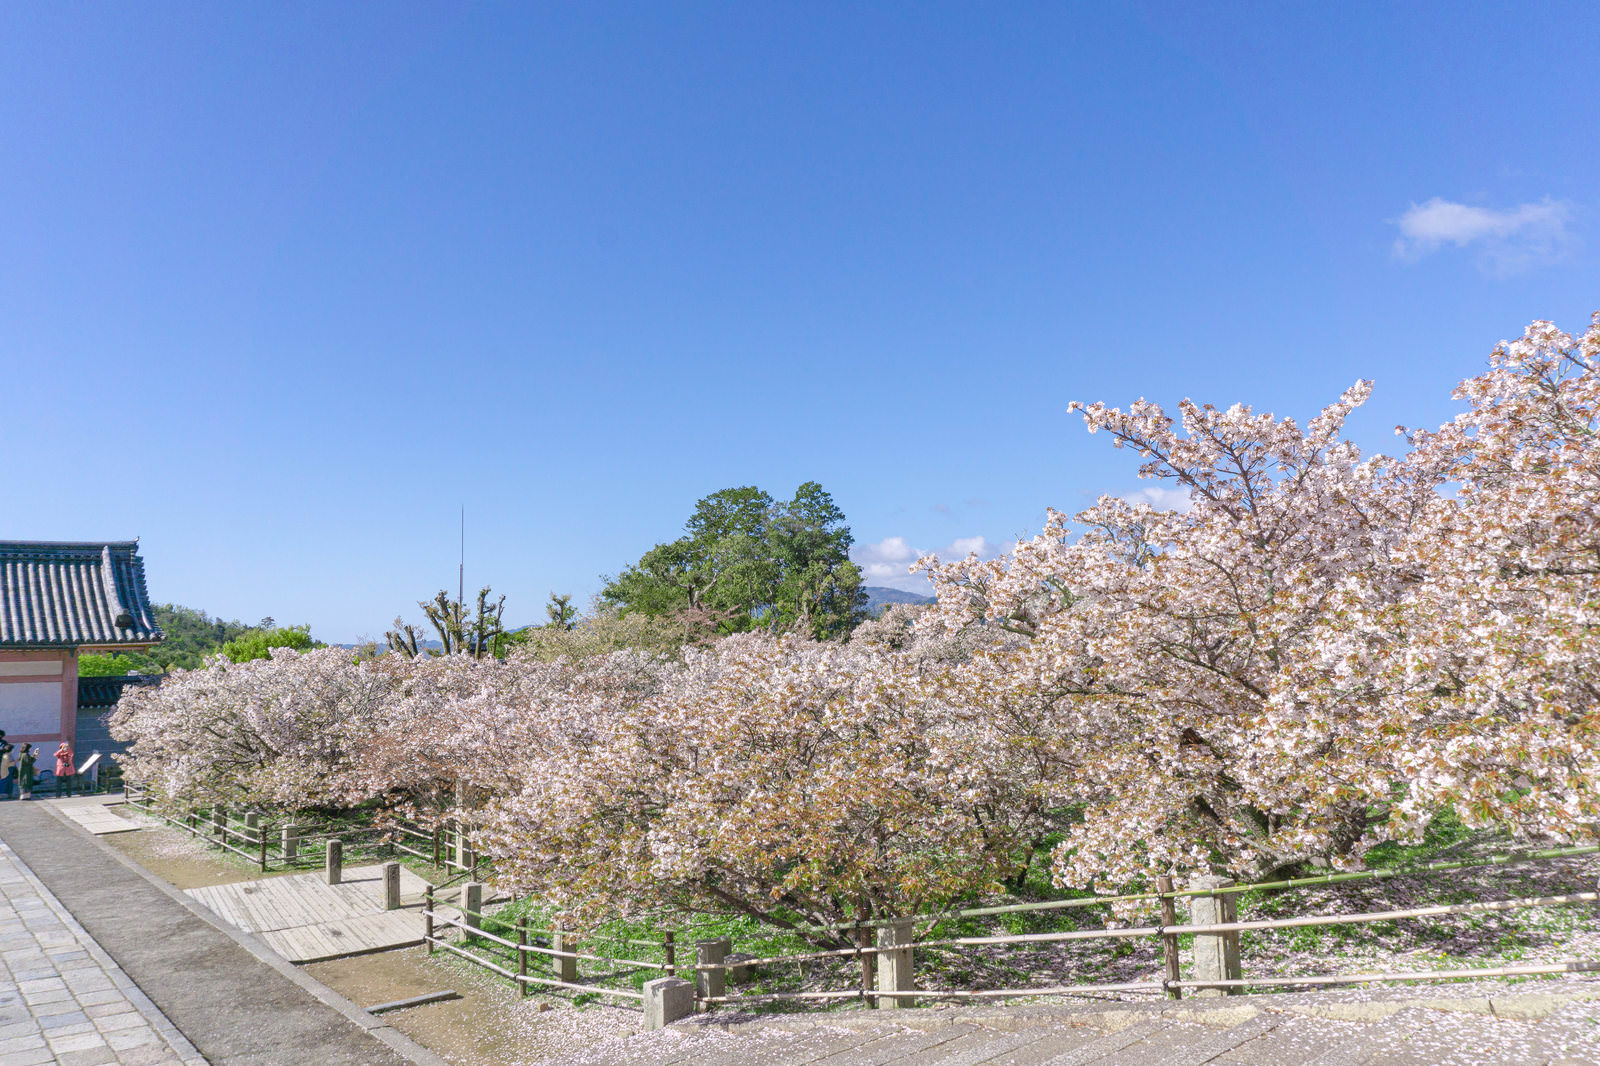 「金堂から見る御室桜の林と中門 | フリー素材のぱくたそ」の写真